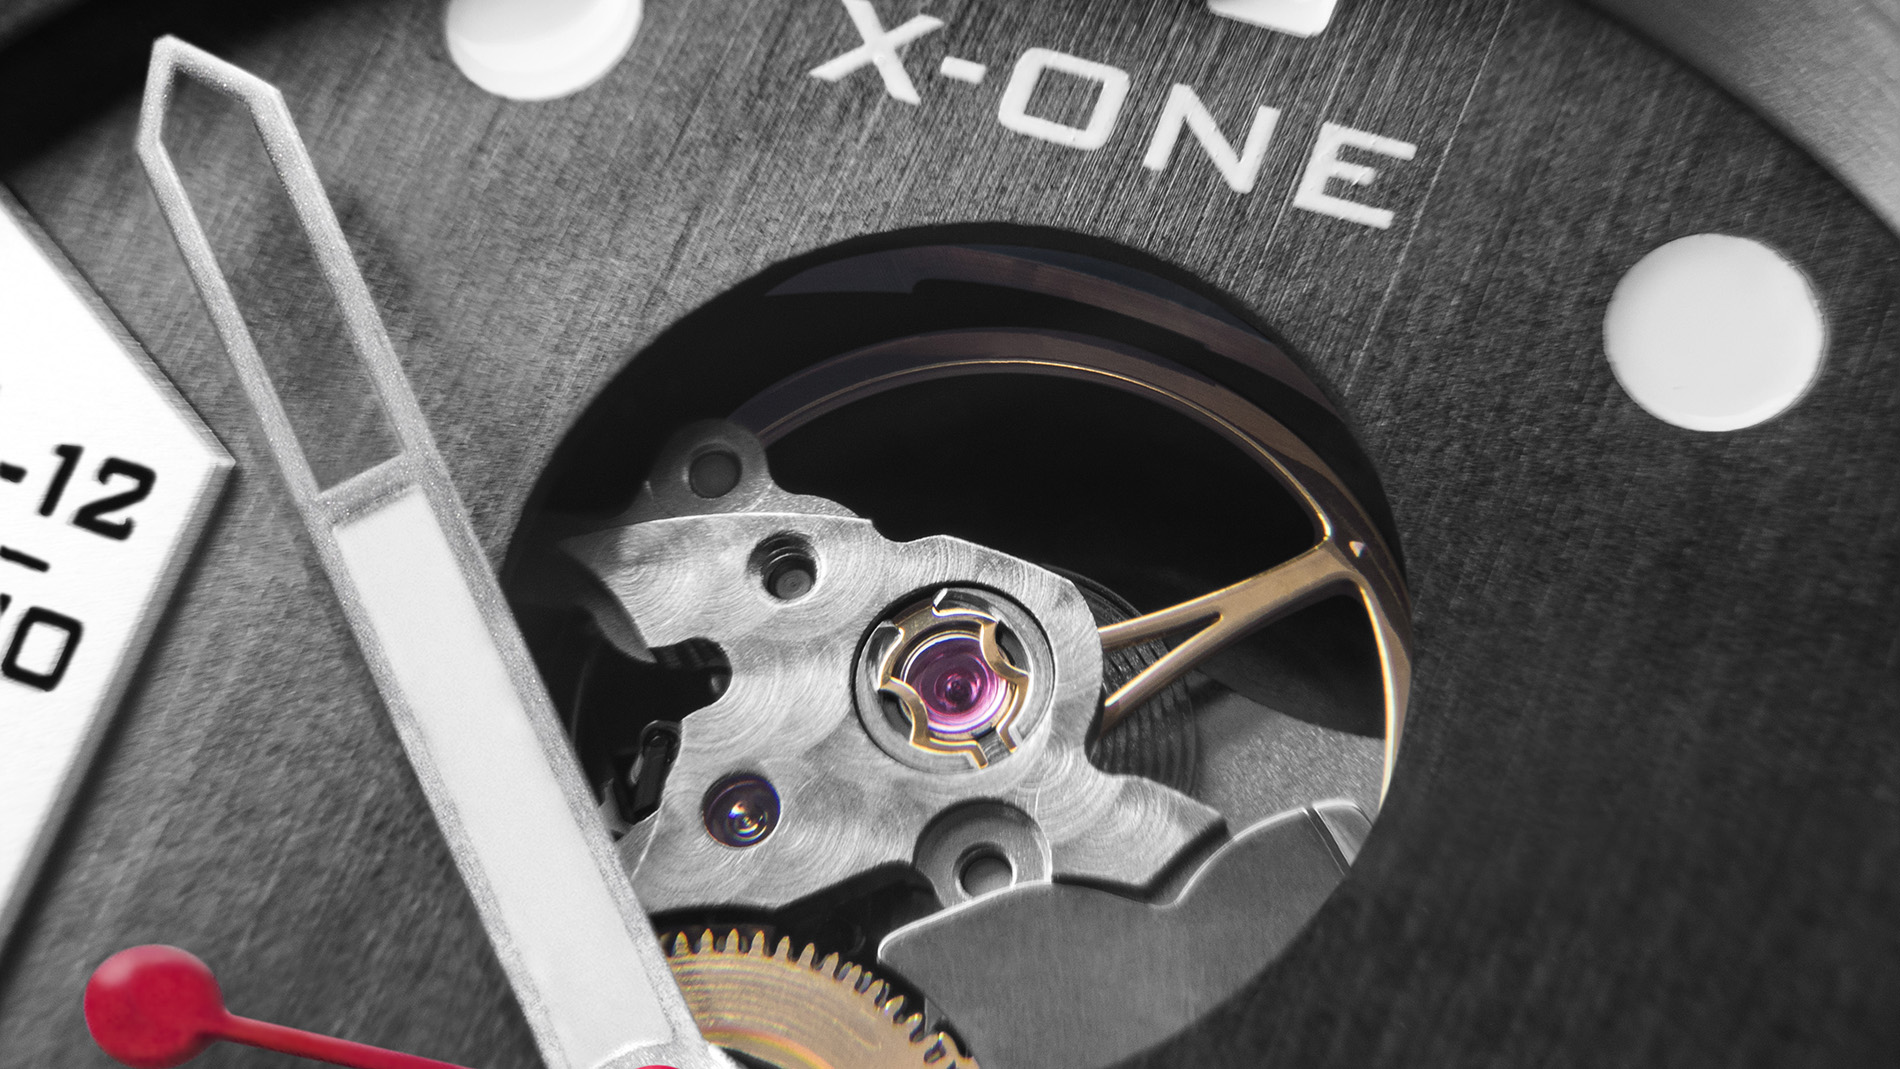 X-ONE - Photographie d'horlogerie - B12communication, communication et graphisme